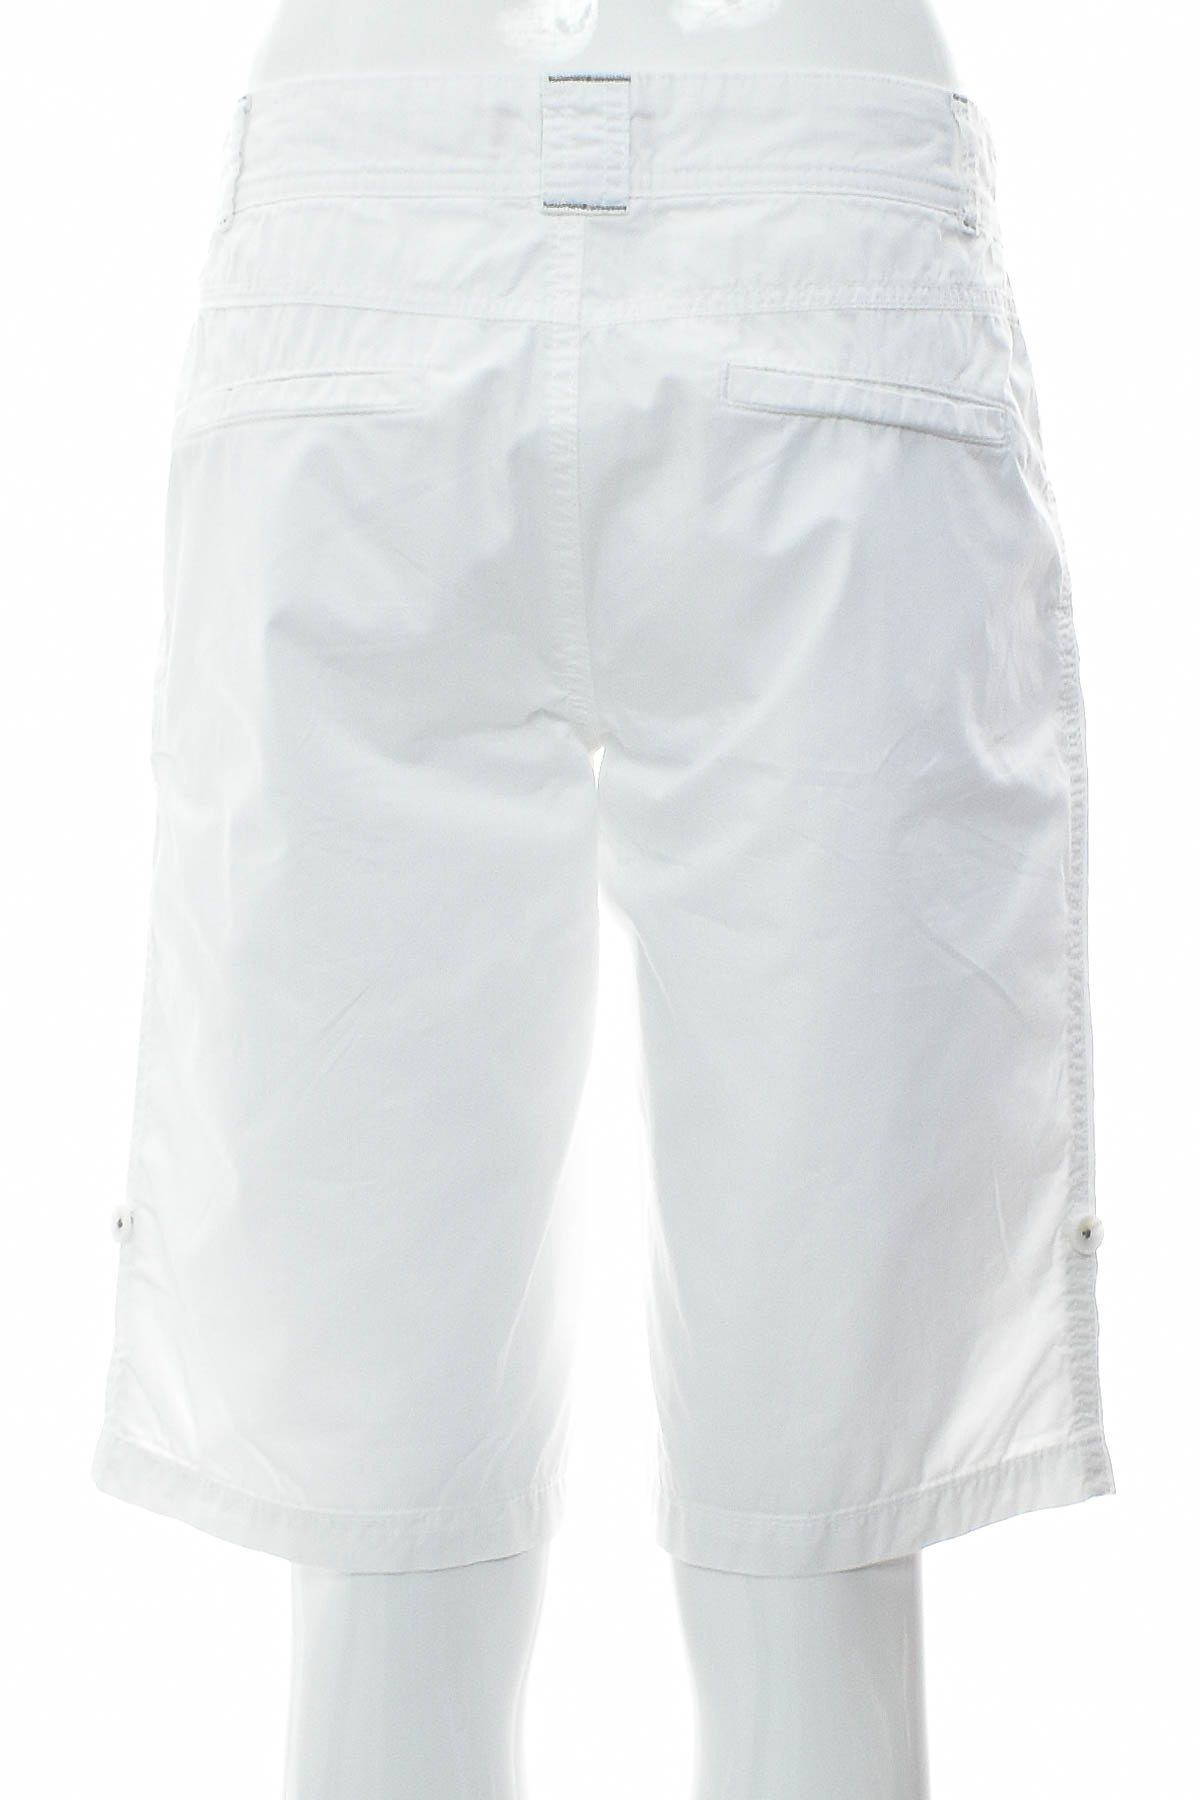 Female shorts - S.Oliver - 1